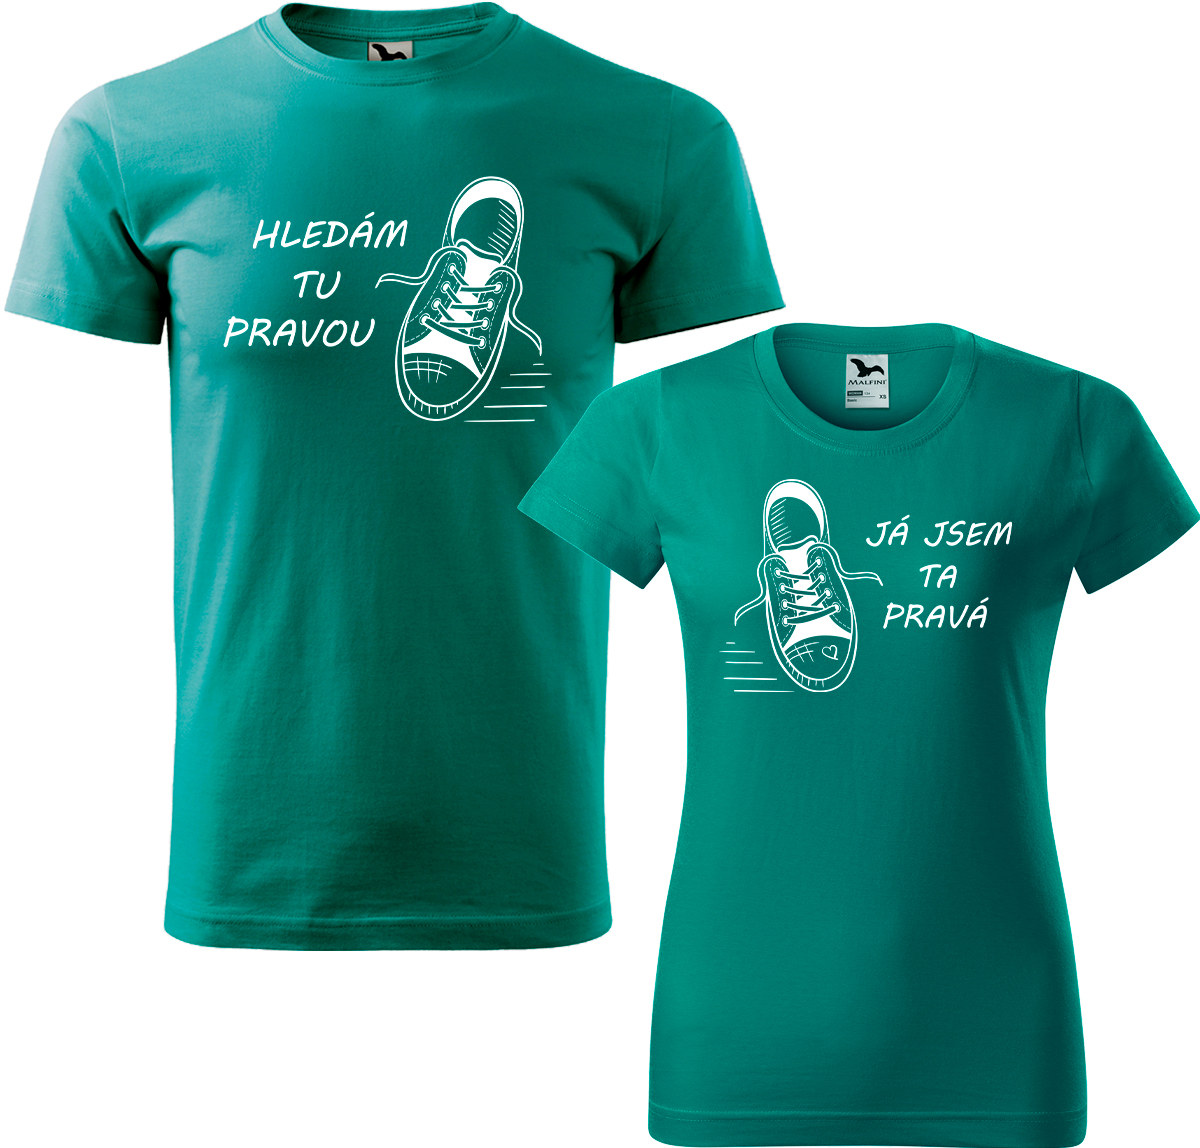 Trička pro páry - Kecky Barva: Emerald (19), Velikost dámské tričko: S, Velikost pánské tričko: S